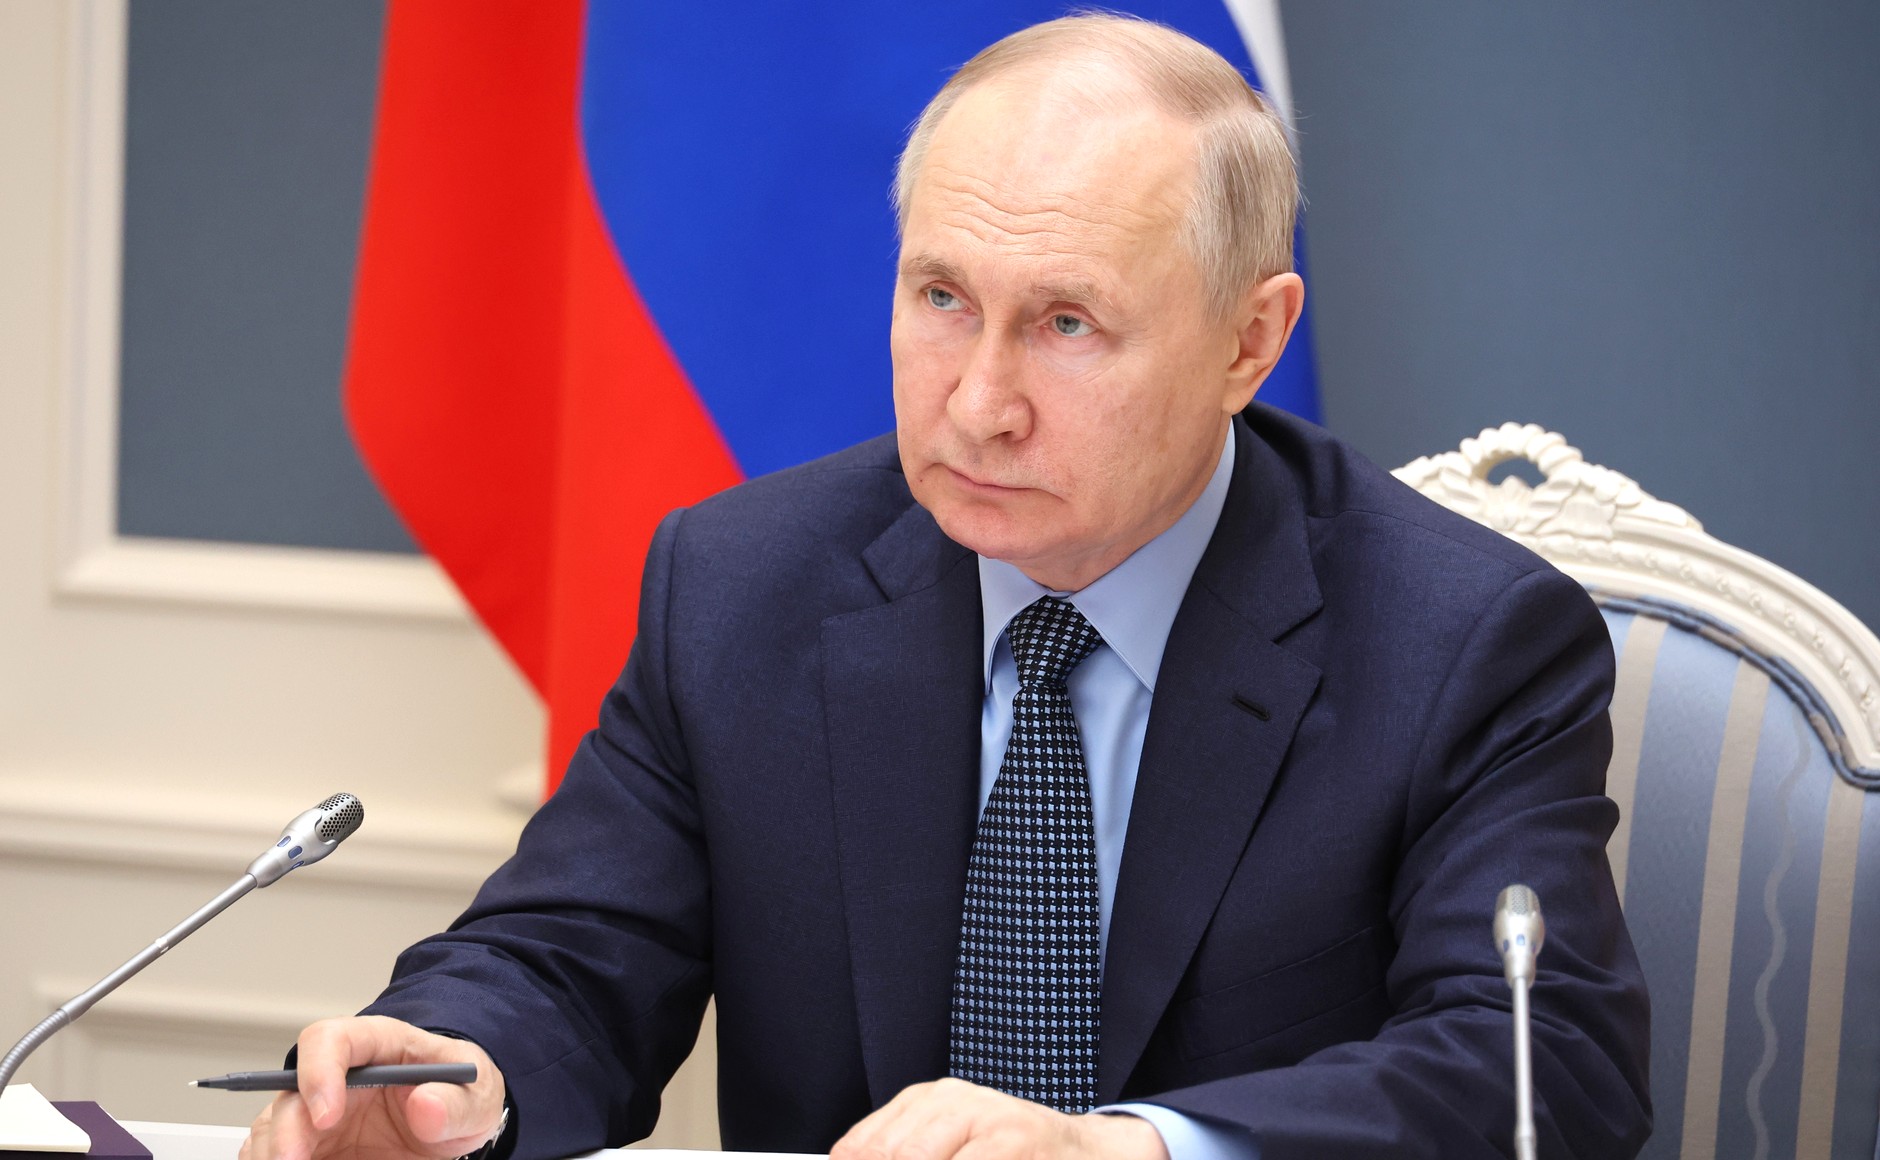 Владимир Путин поручил предоставить субсидии для перевозки лососевых и сардины с Дальнего Востока